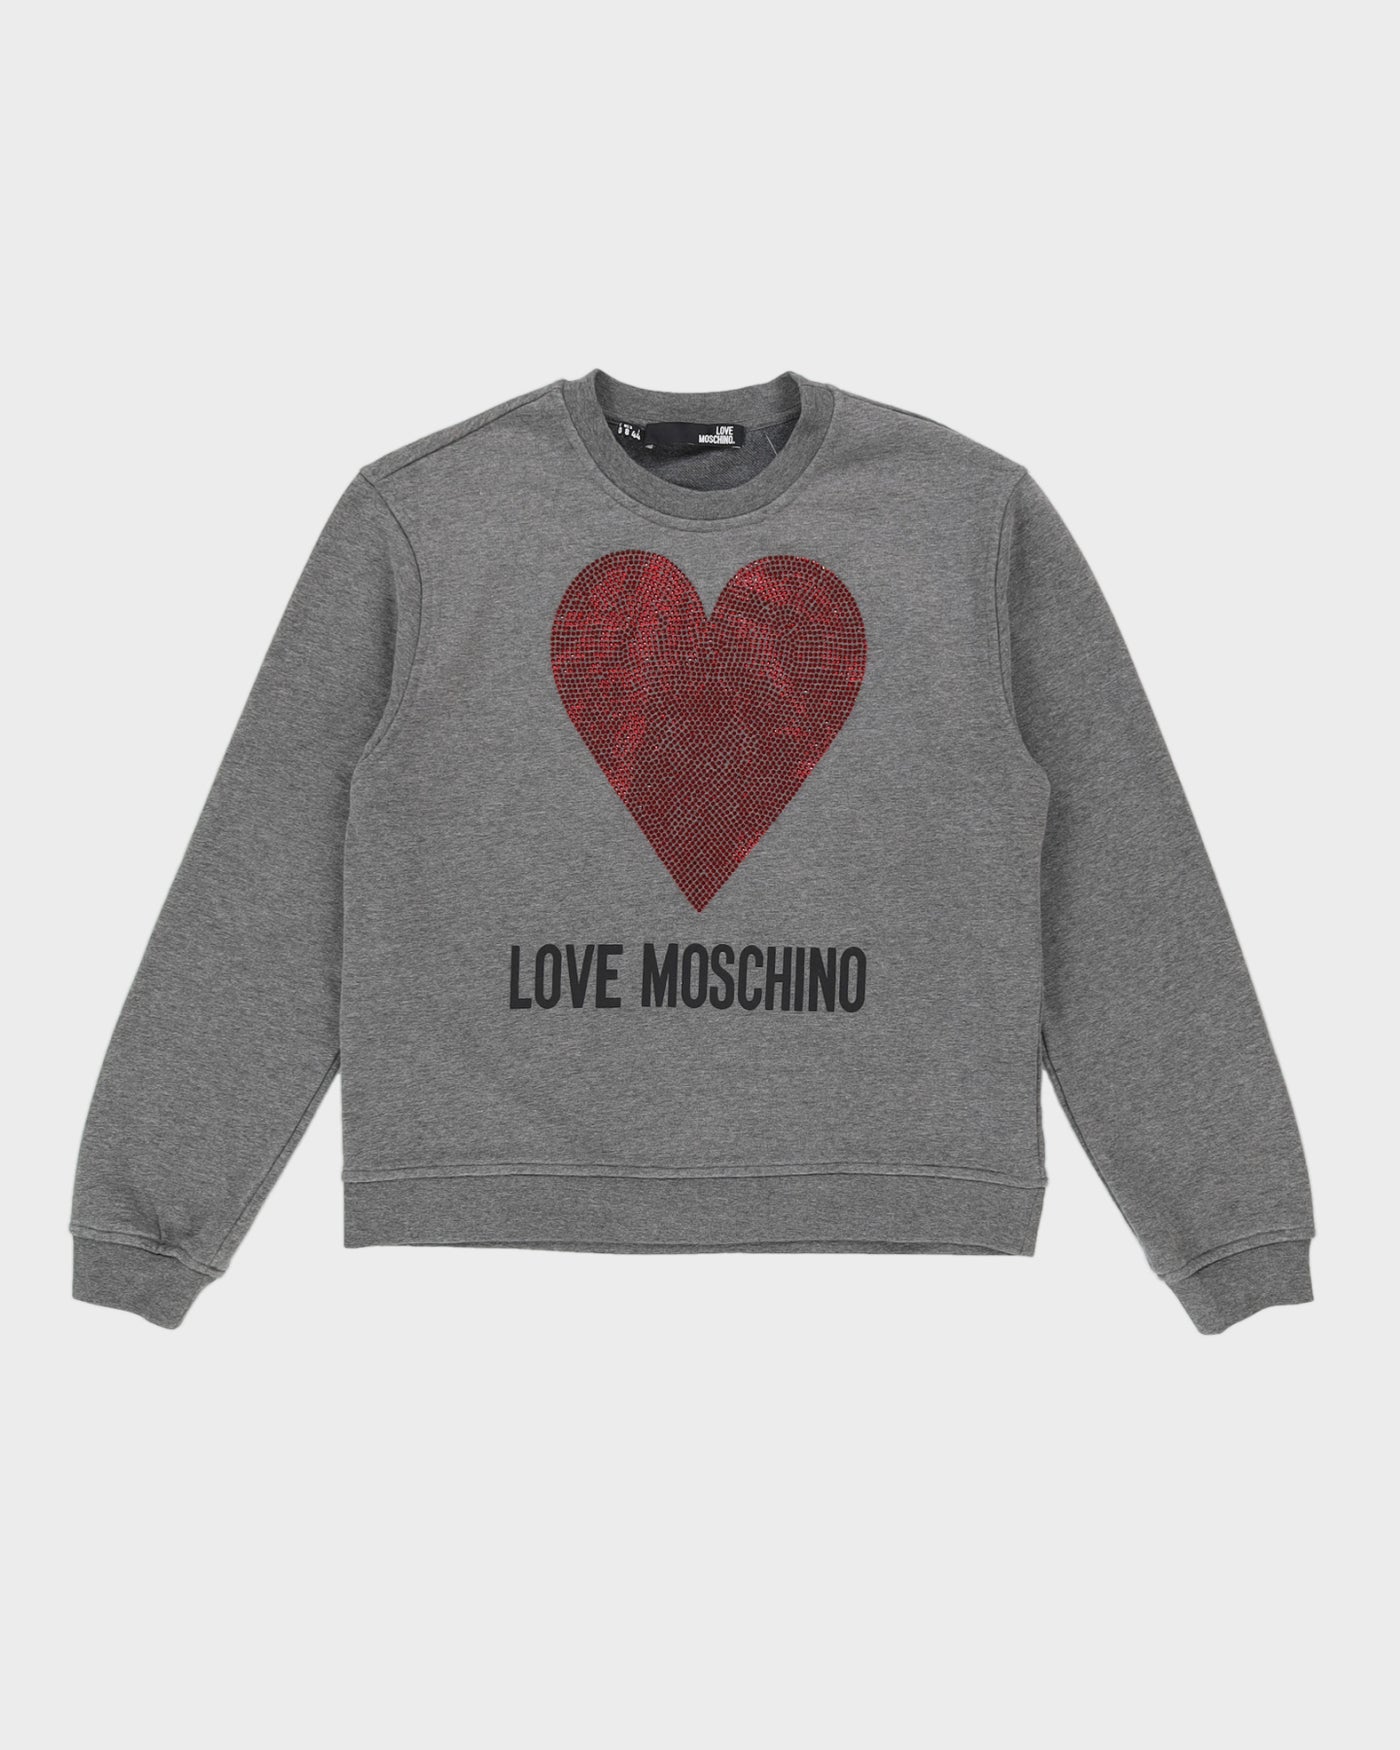 Love Moschino Grey Sweatshirt - M